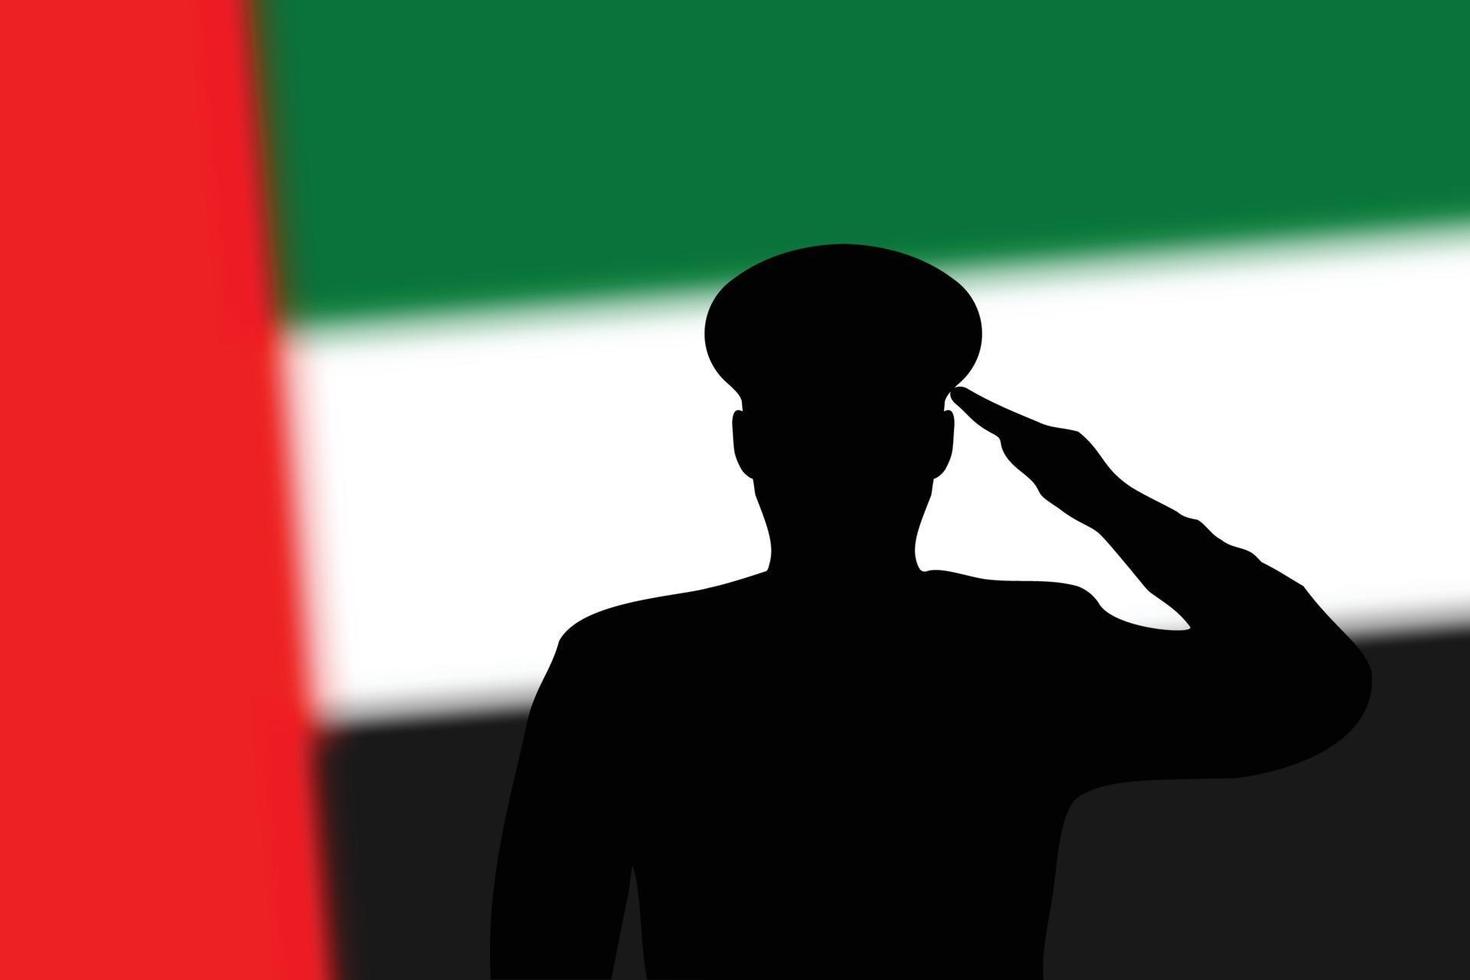 Lötsilhouette auf unscharfem Hintergrund mit Flagge der Vereinigten Arabischen Emirate. vektor